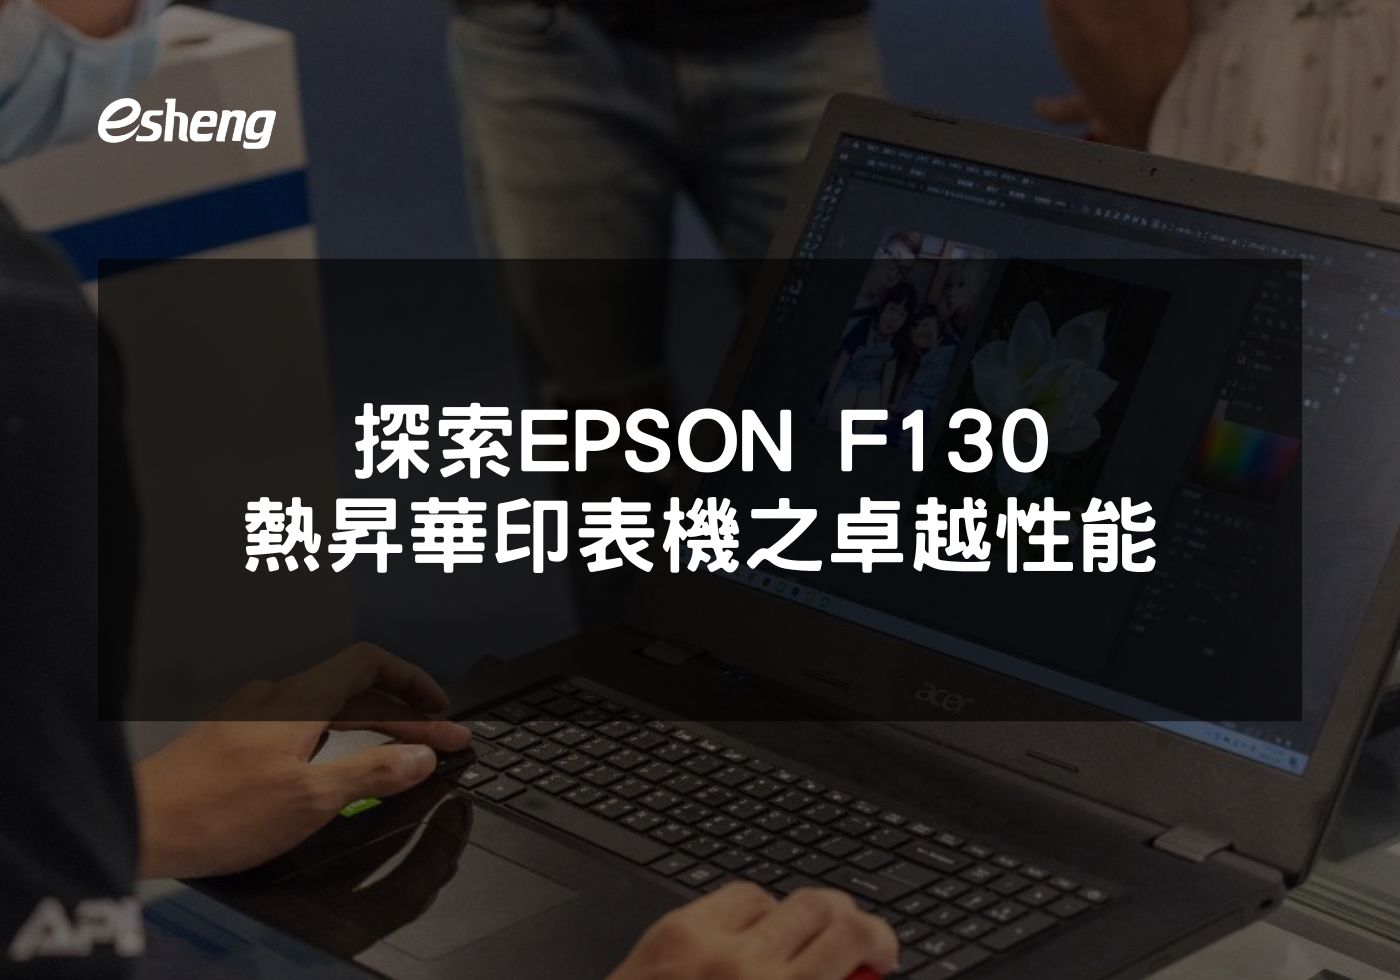 閱讀更多文章 探索EPSON F130熱昇華印表機之卓越性能